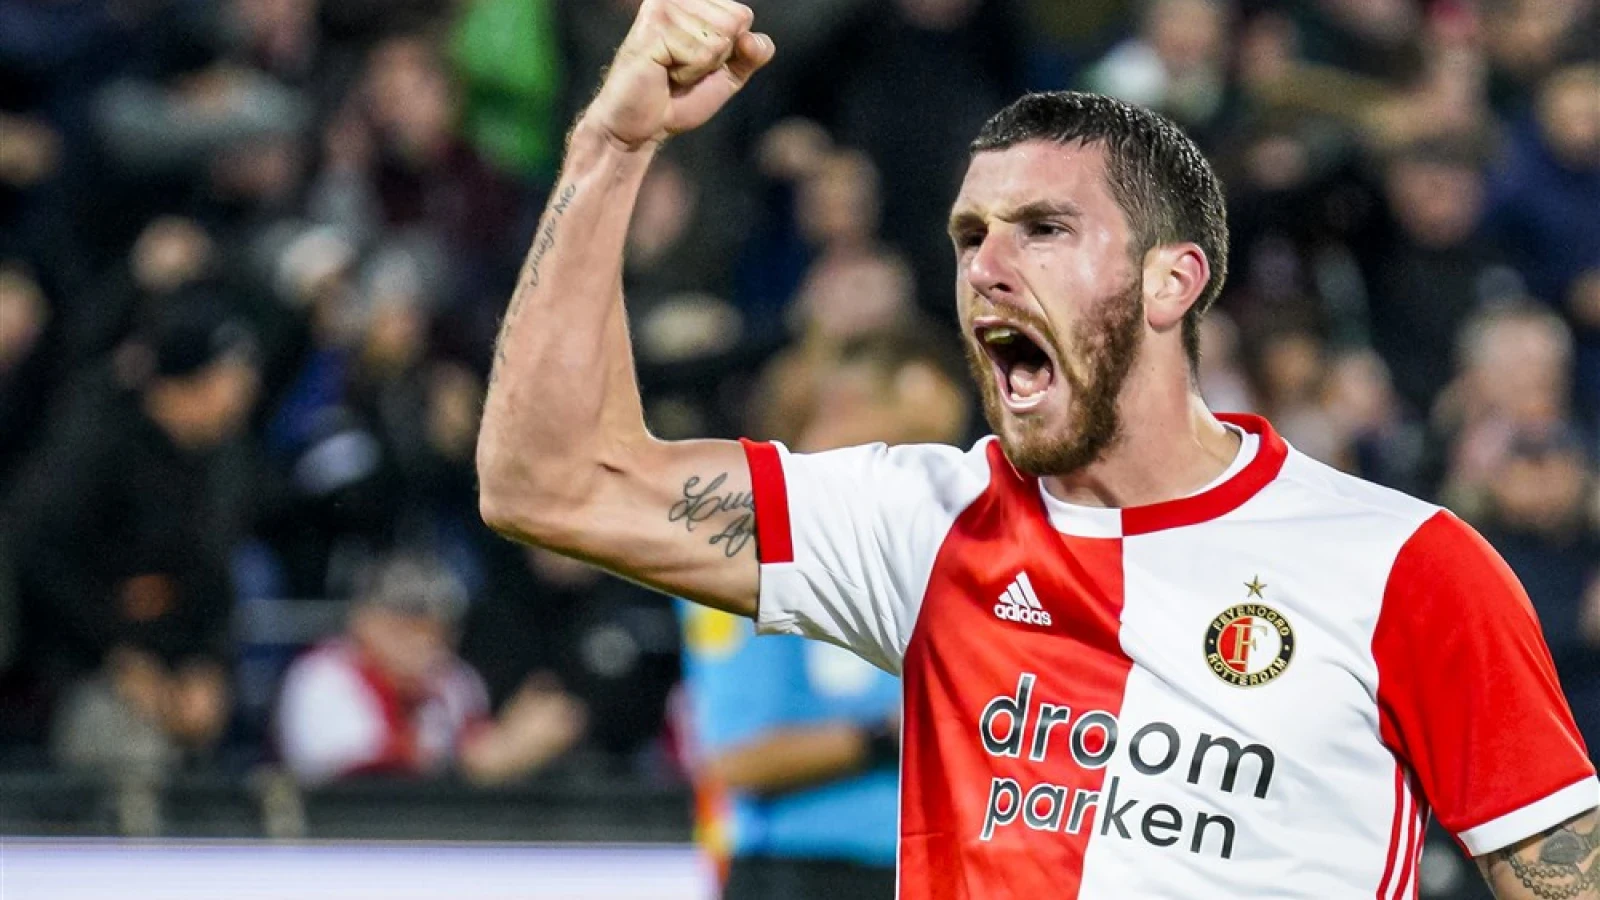 Meerdere clubs verlagen salaris spelers: 'Feyenoord heeft er nog niks over gezegd'